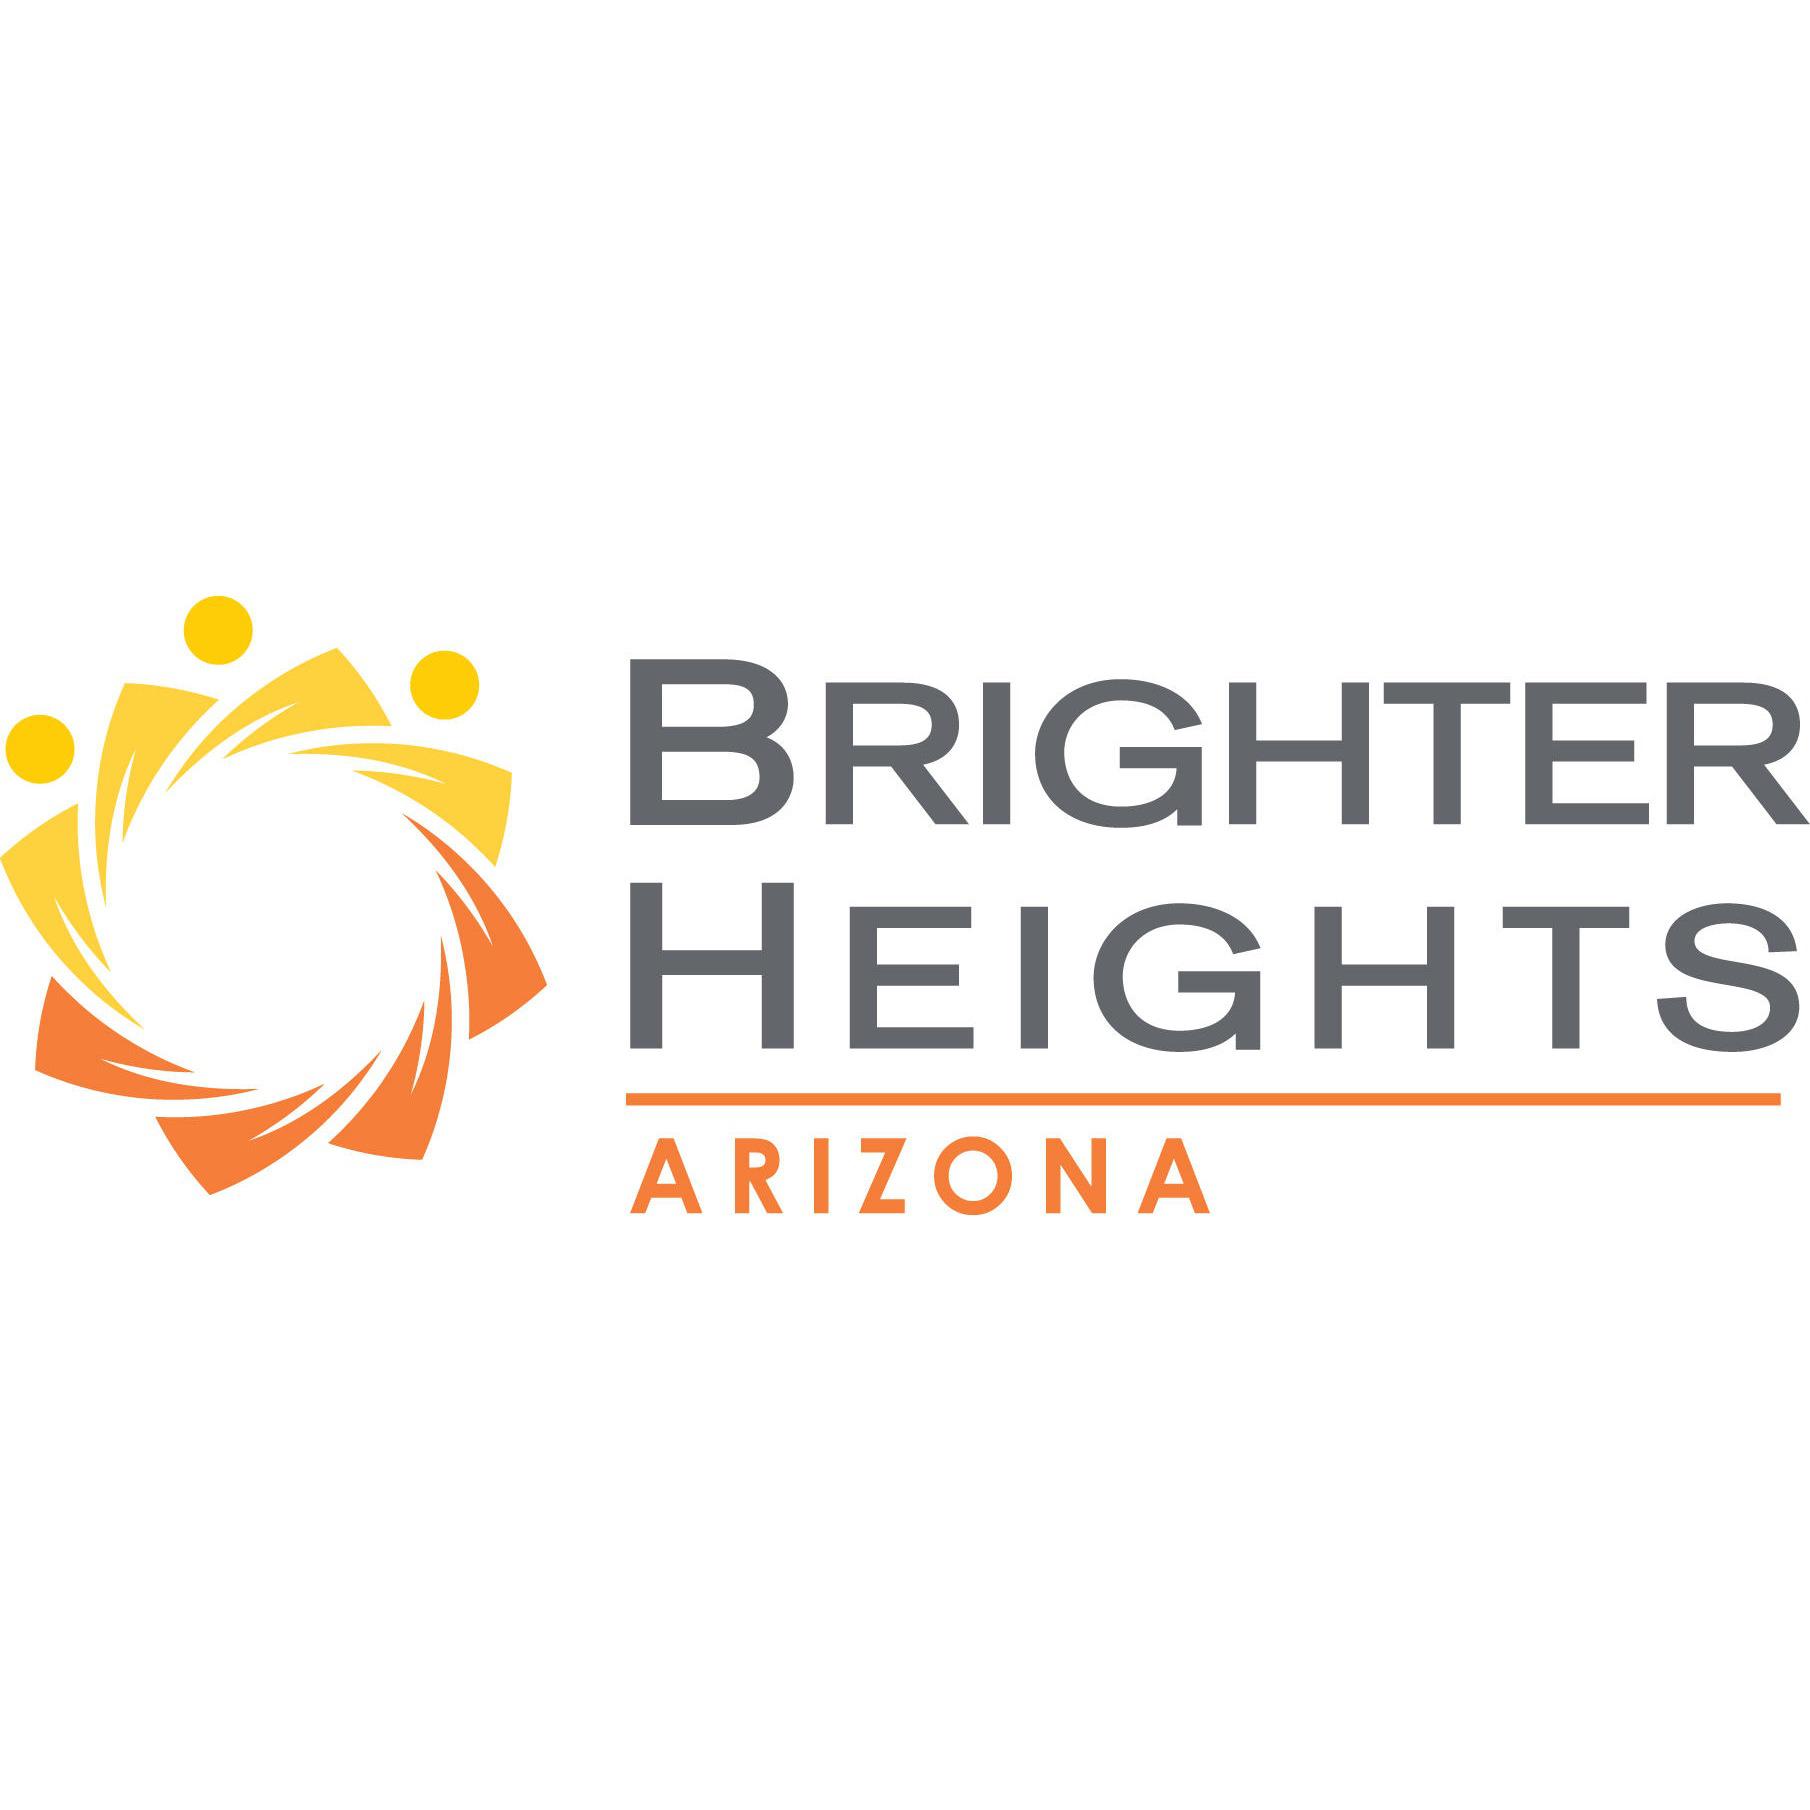 Brighter Heights Arizona